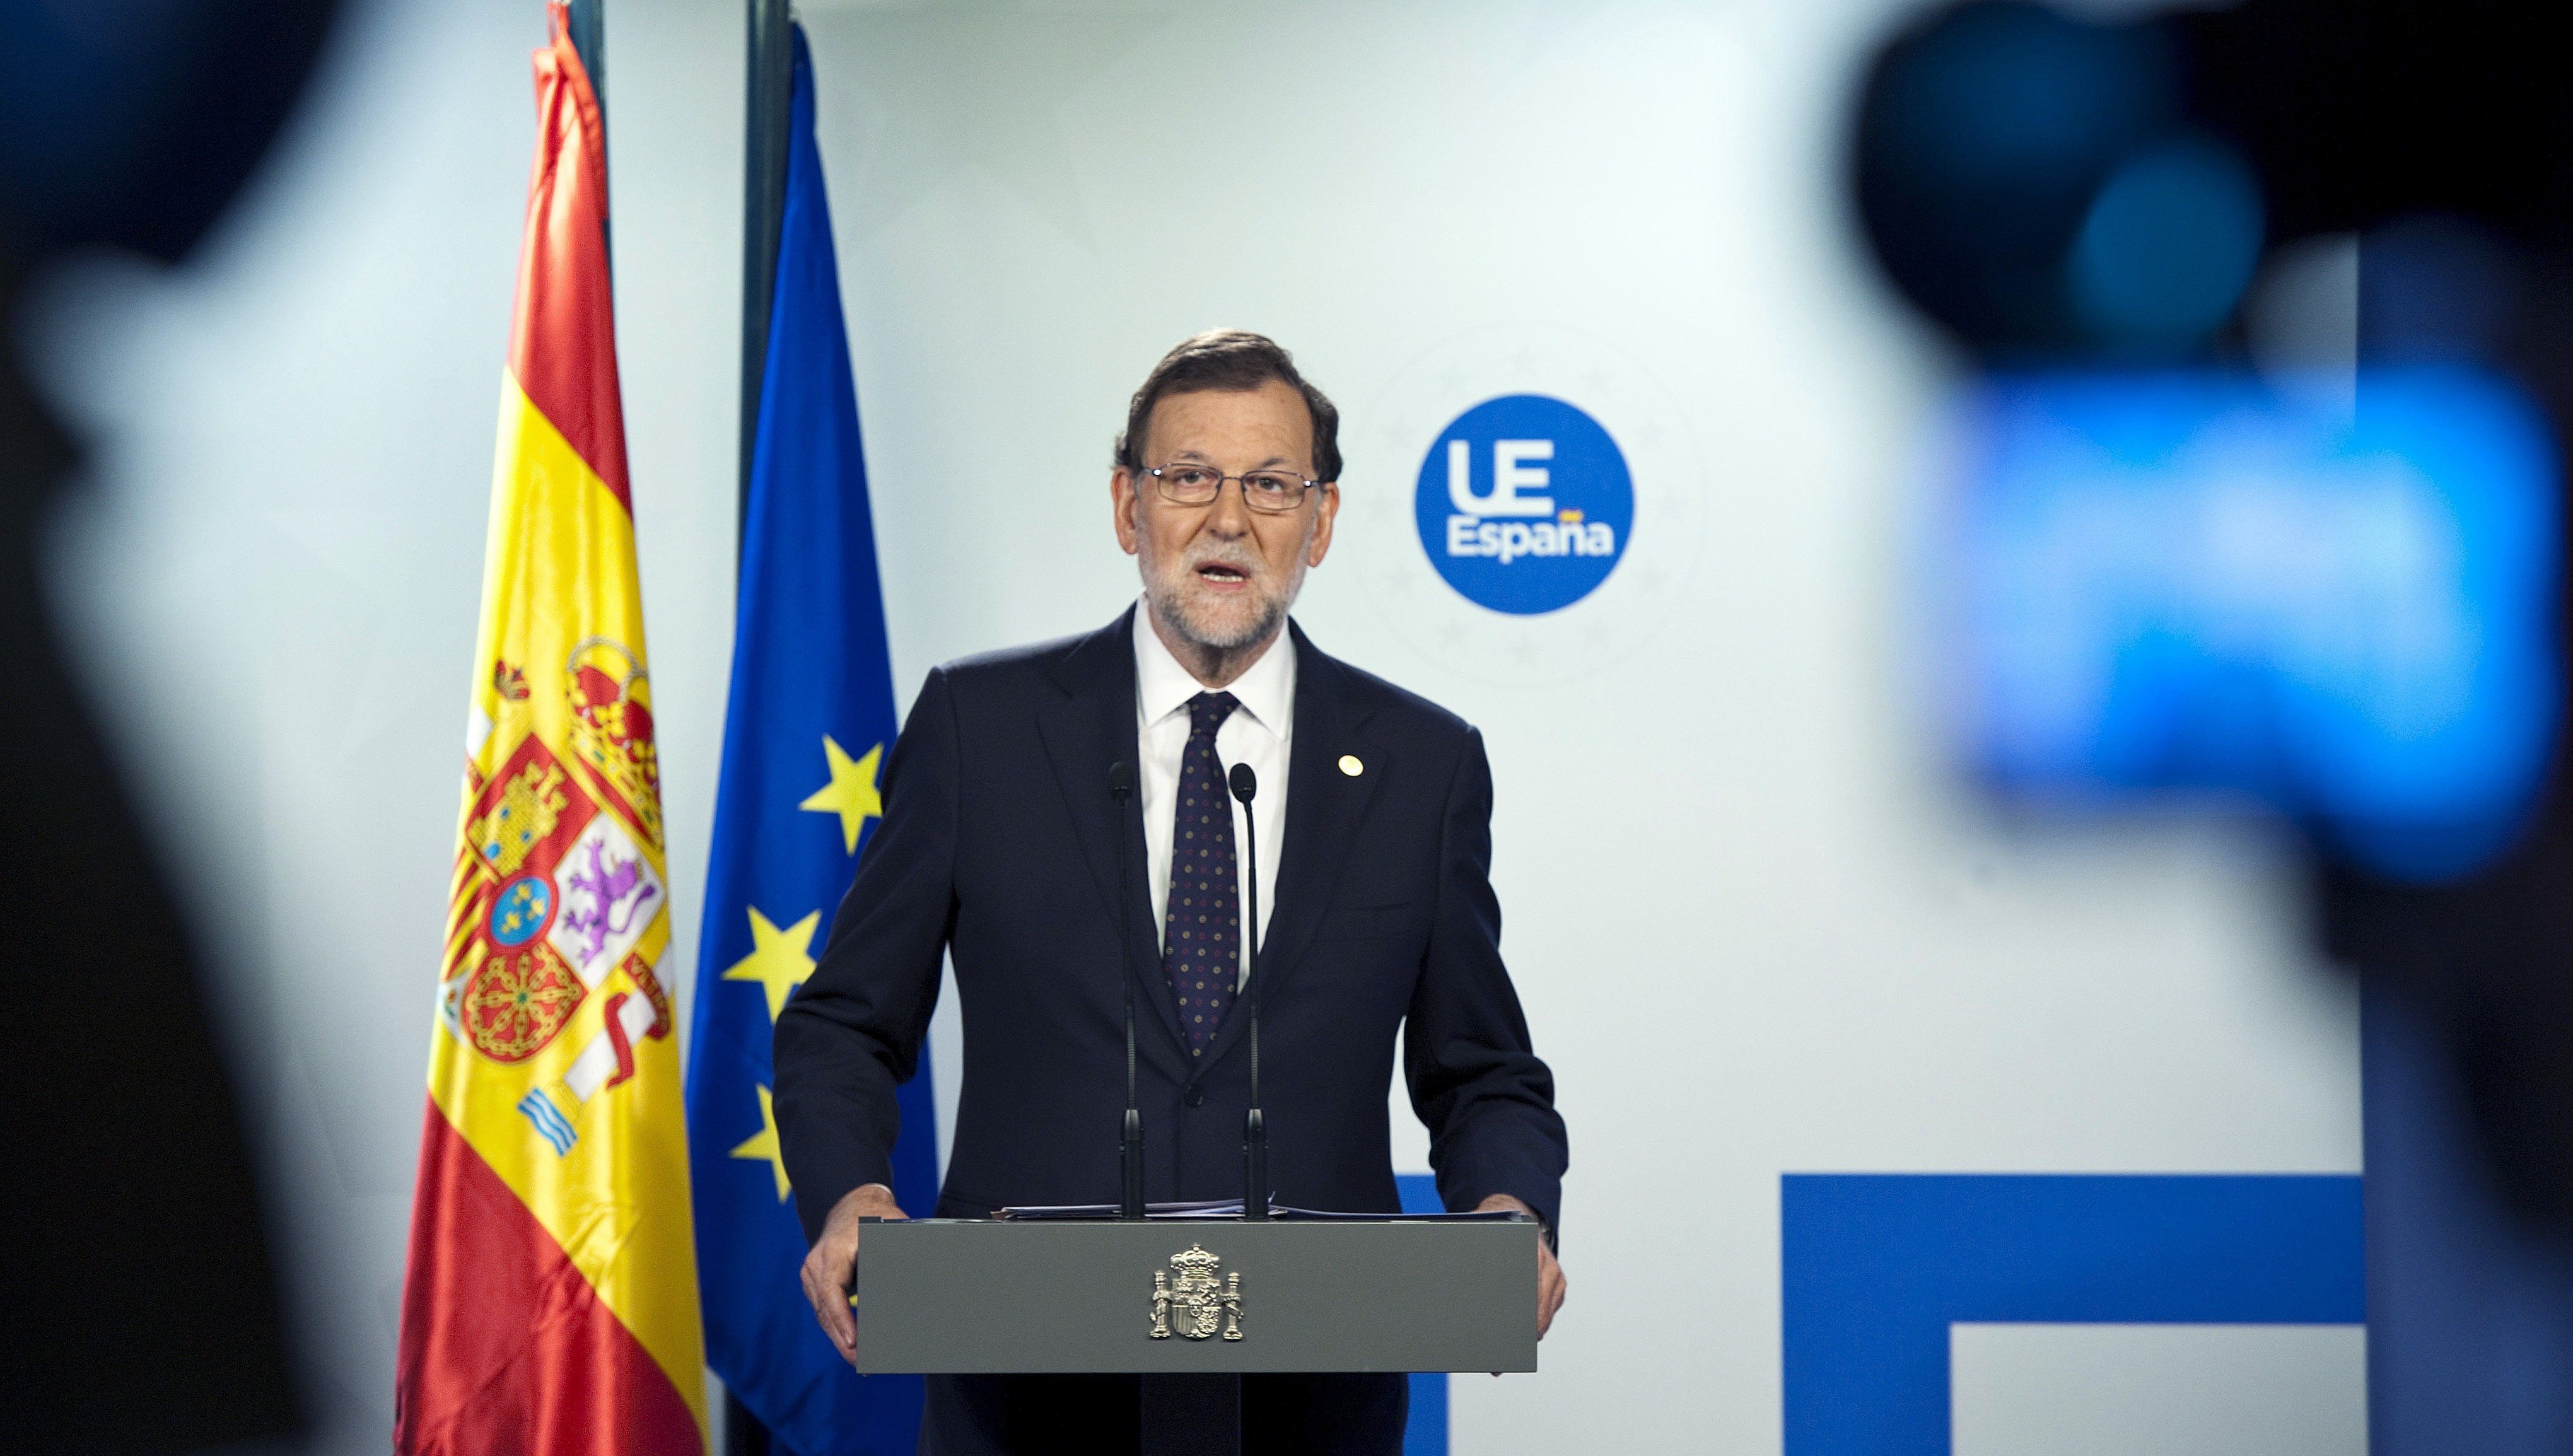 La indecisió del PSOE fa apropar posicions a Rajoy i C's